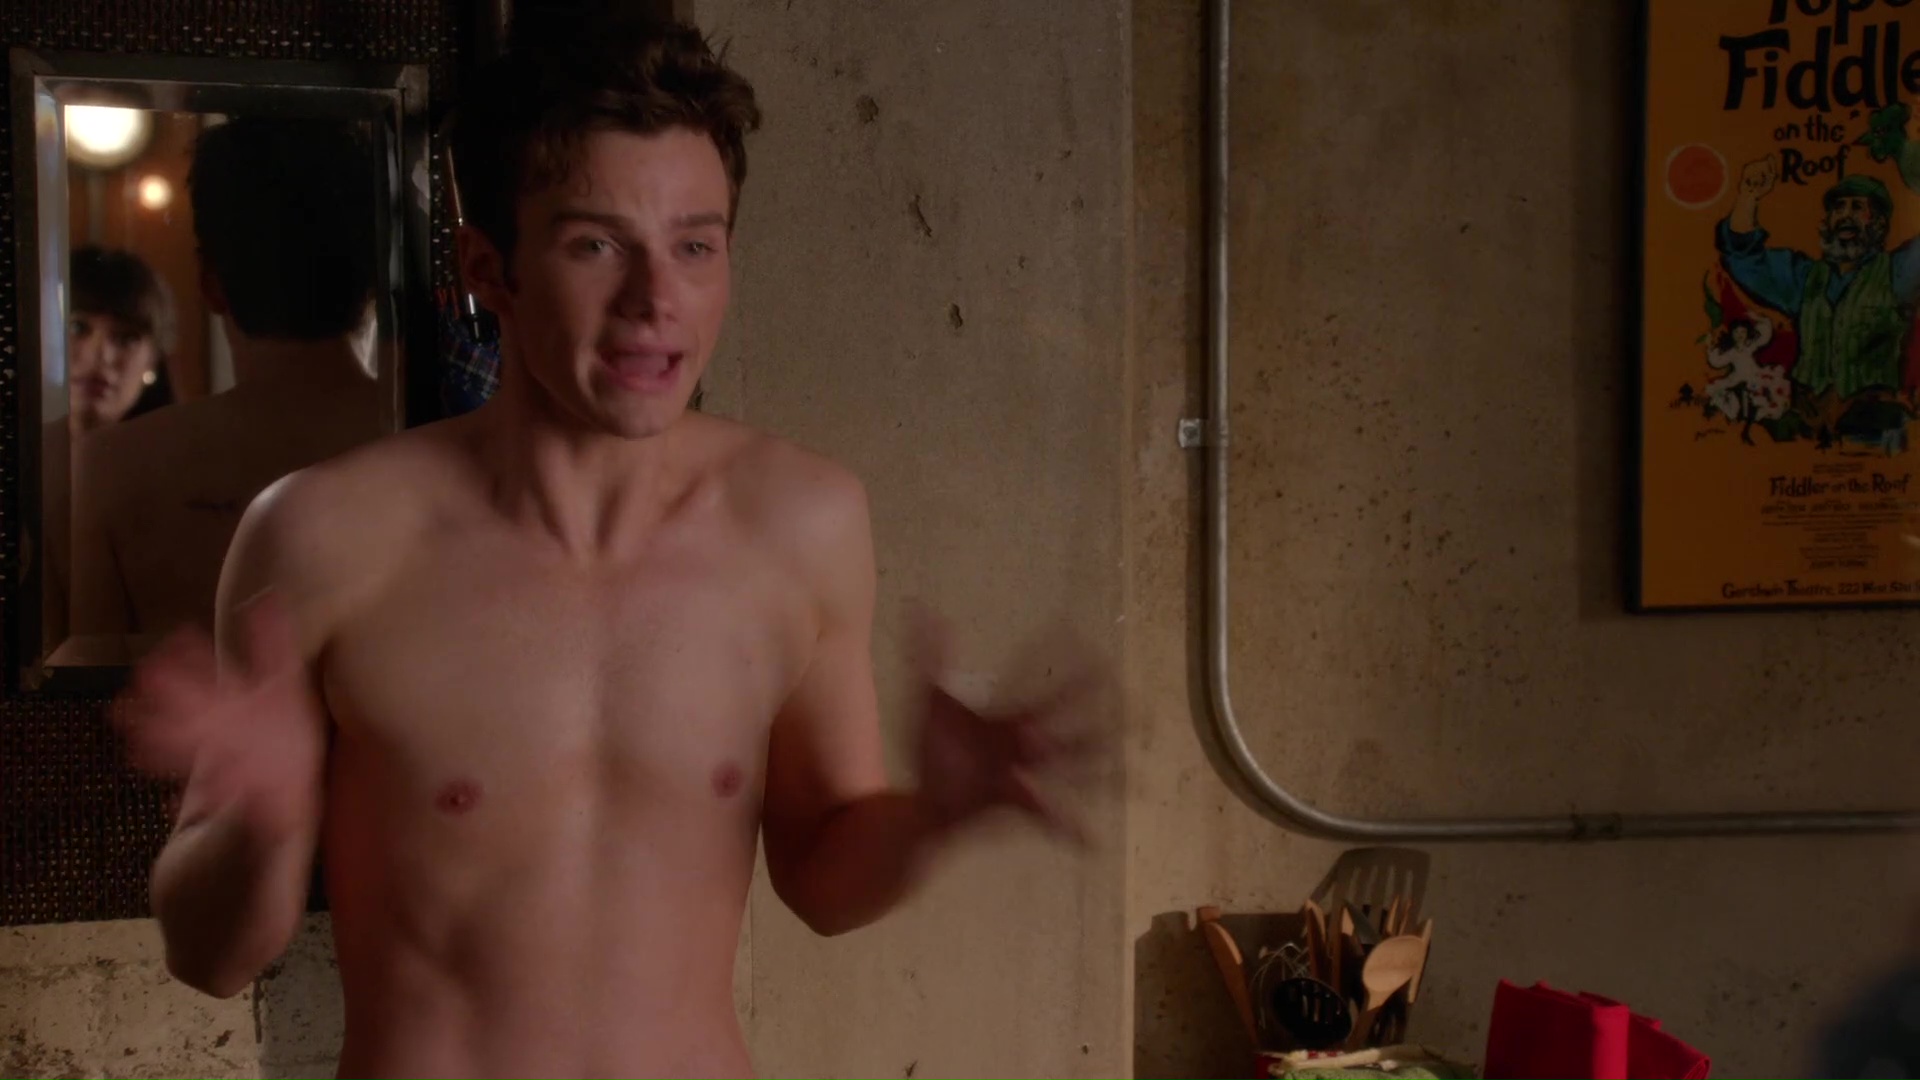 Chris Colfer shirtless in Glee 5-05 "The End Of Twerk" .